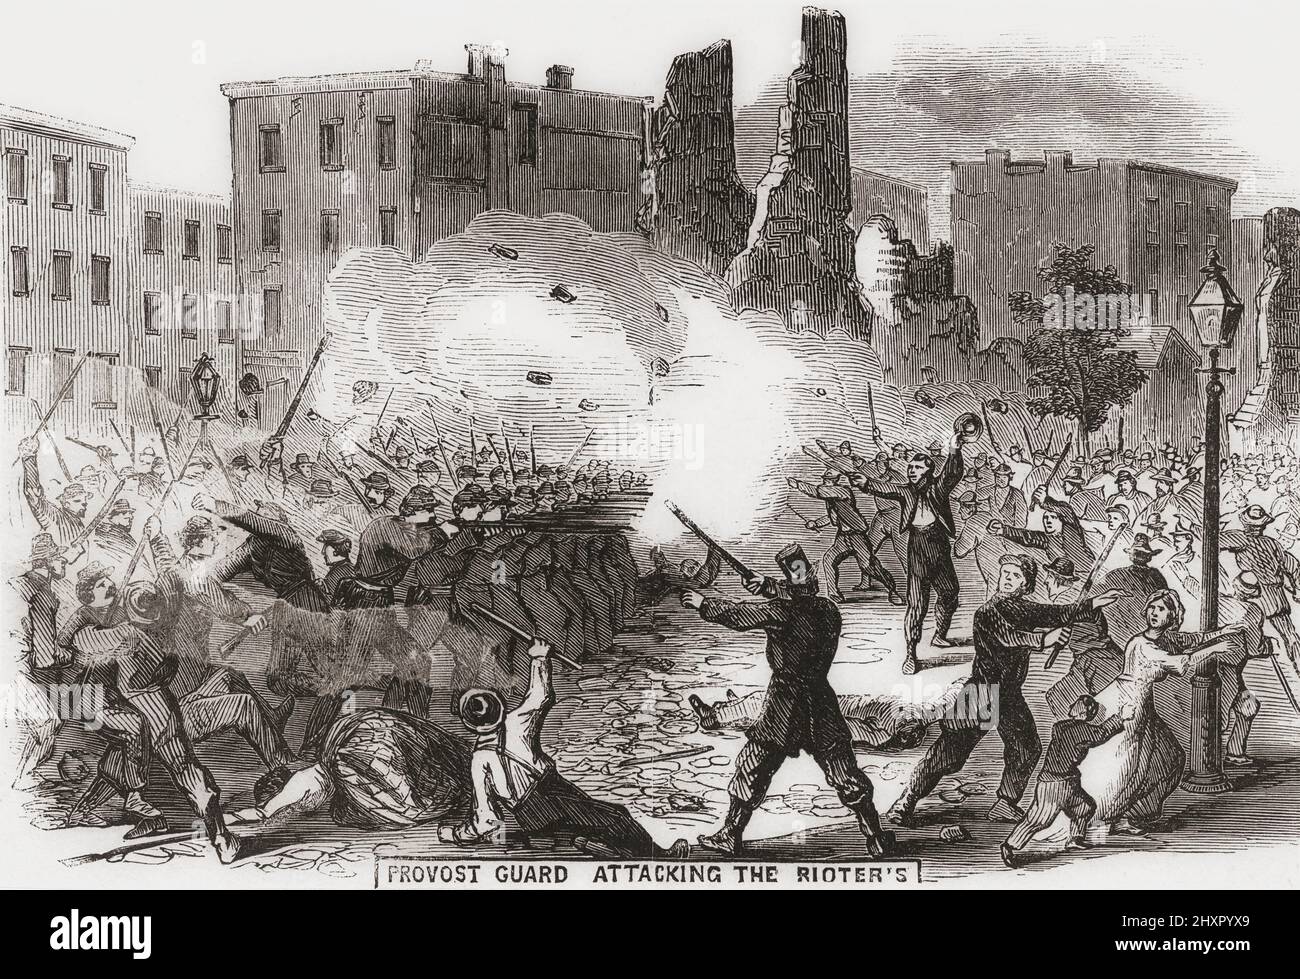 Die Wachen der Provost greifen die Randalierer an. New York Entwurfsunruhen, 13. - 16. Juli 1863. Die Unruhen ereigneten sich als Reaktion auf die Verabschiedung eines Gesetzes des Kongresses, das Männer für den amerikanischen Bürgerkrieg entnimmt. In dem auf dem Bild gezeigten Vorfall versuchten die Provokanten erfolglos, die Randalierer mit einer Büchsenfalle zu zerstreuen. Der Mob drehte sich gegen sie, verletzte 14 Soldaten und tötete möglicherweise einen. Stockfoto